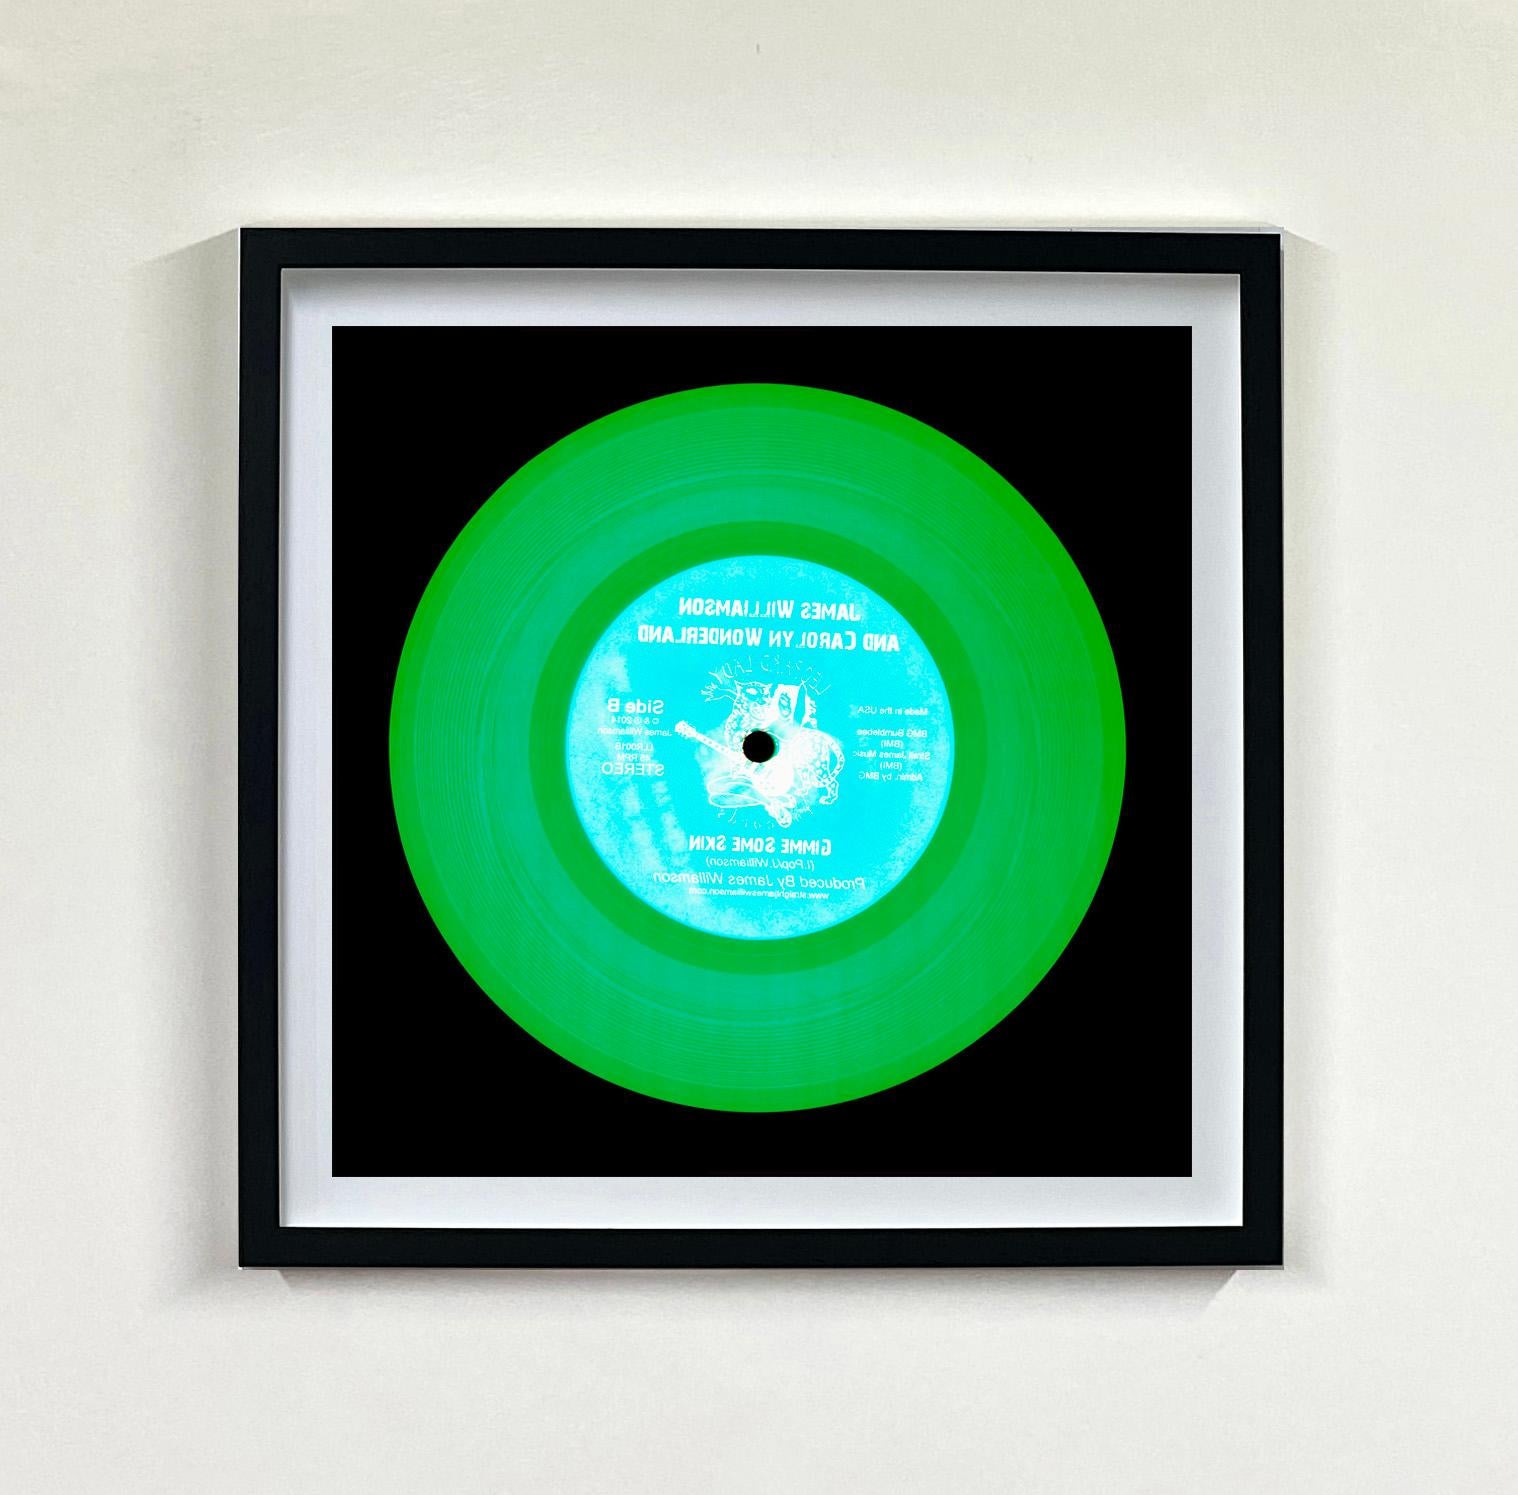 Heidler & Heeps Vinyl Collection Nine Piece Multicolor Installation.
Die renommierten zeitgenössischen Fotografen Richard Heeps und Natasha Heidler haben für diese wunderschöne, faszinierende Kollektion zusammengearbeitet. Ein Fest der Schallplatte